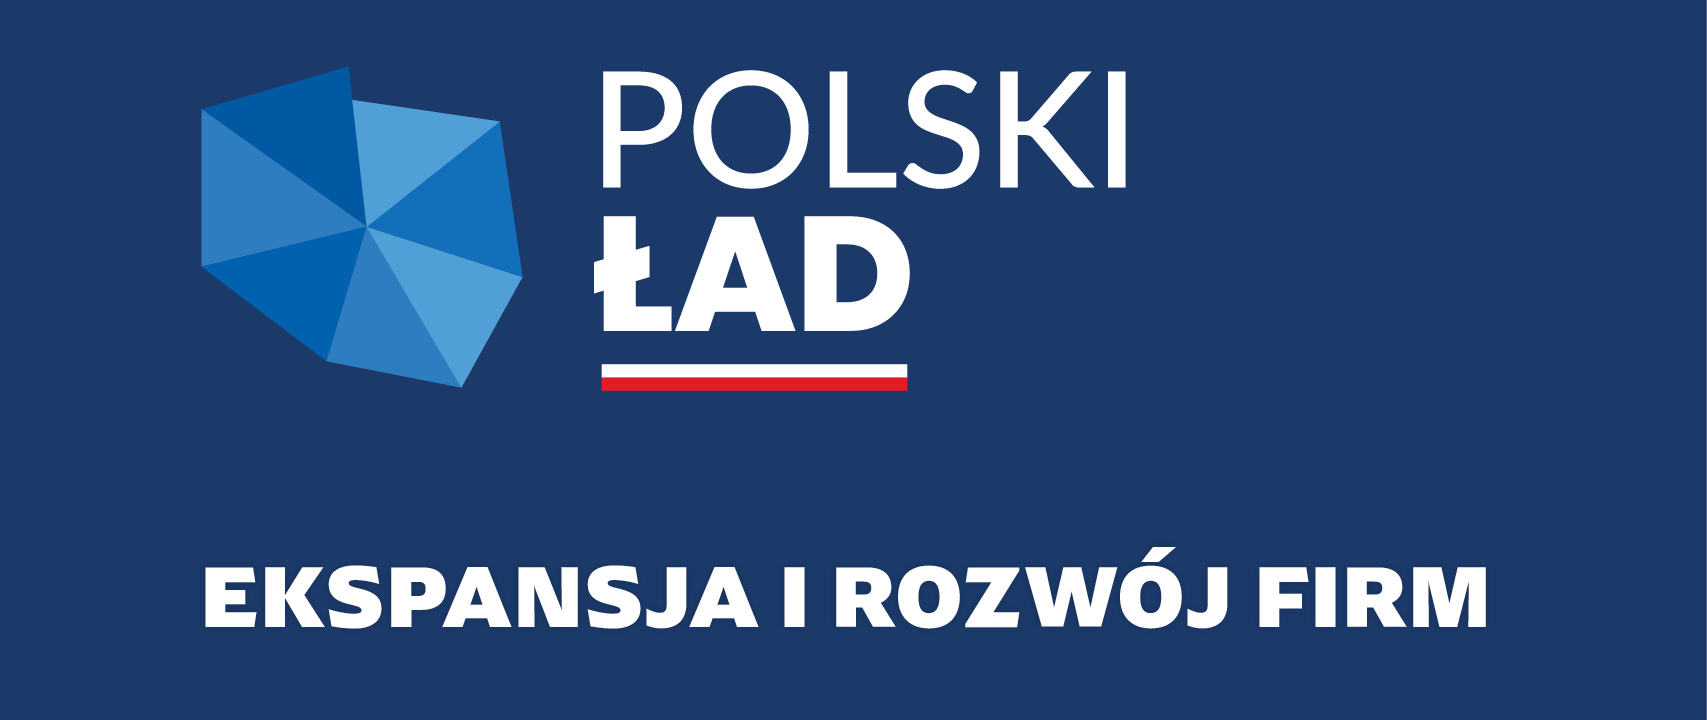 Logo Polski Ład. Napis: ekspansja i rozwój firm